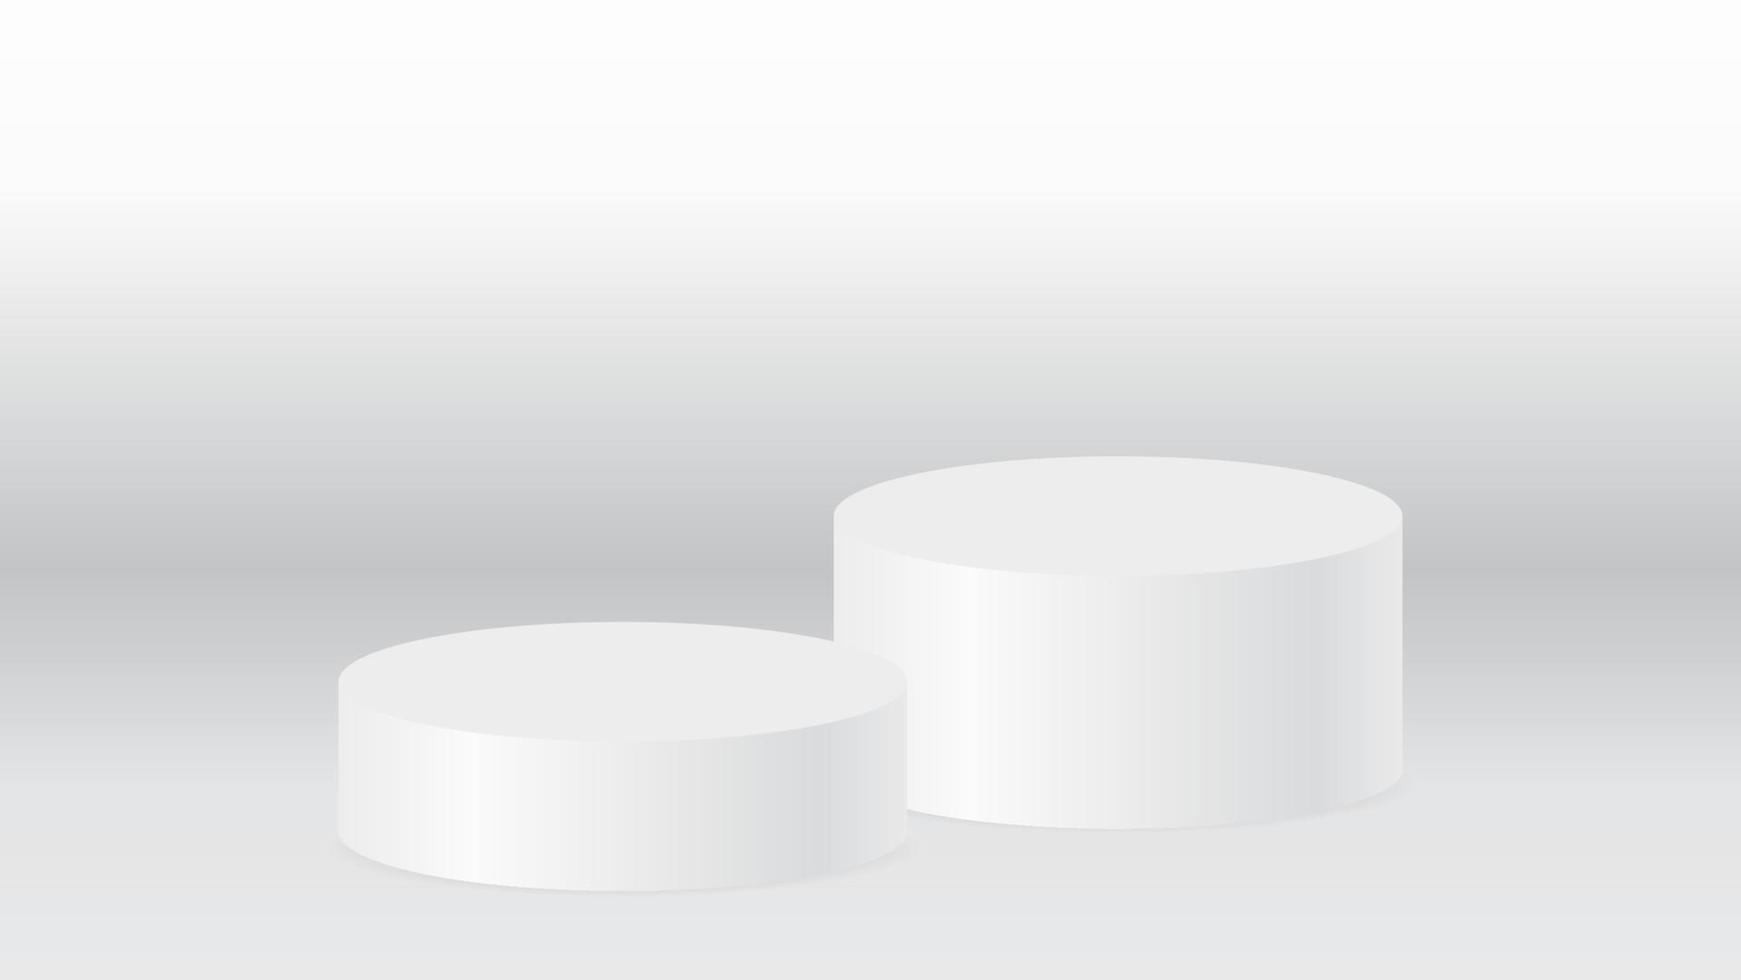 blnk vit podium på vit bakgrund för produktvisningsreklam och grafisk designelement vektor